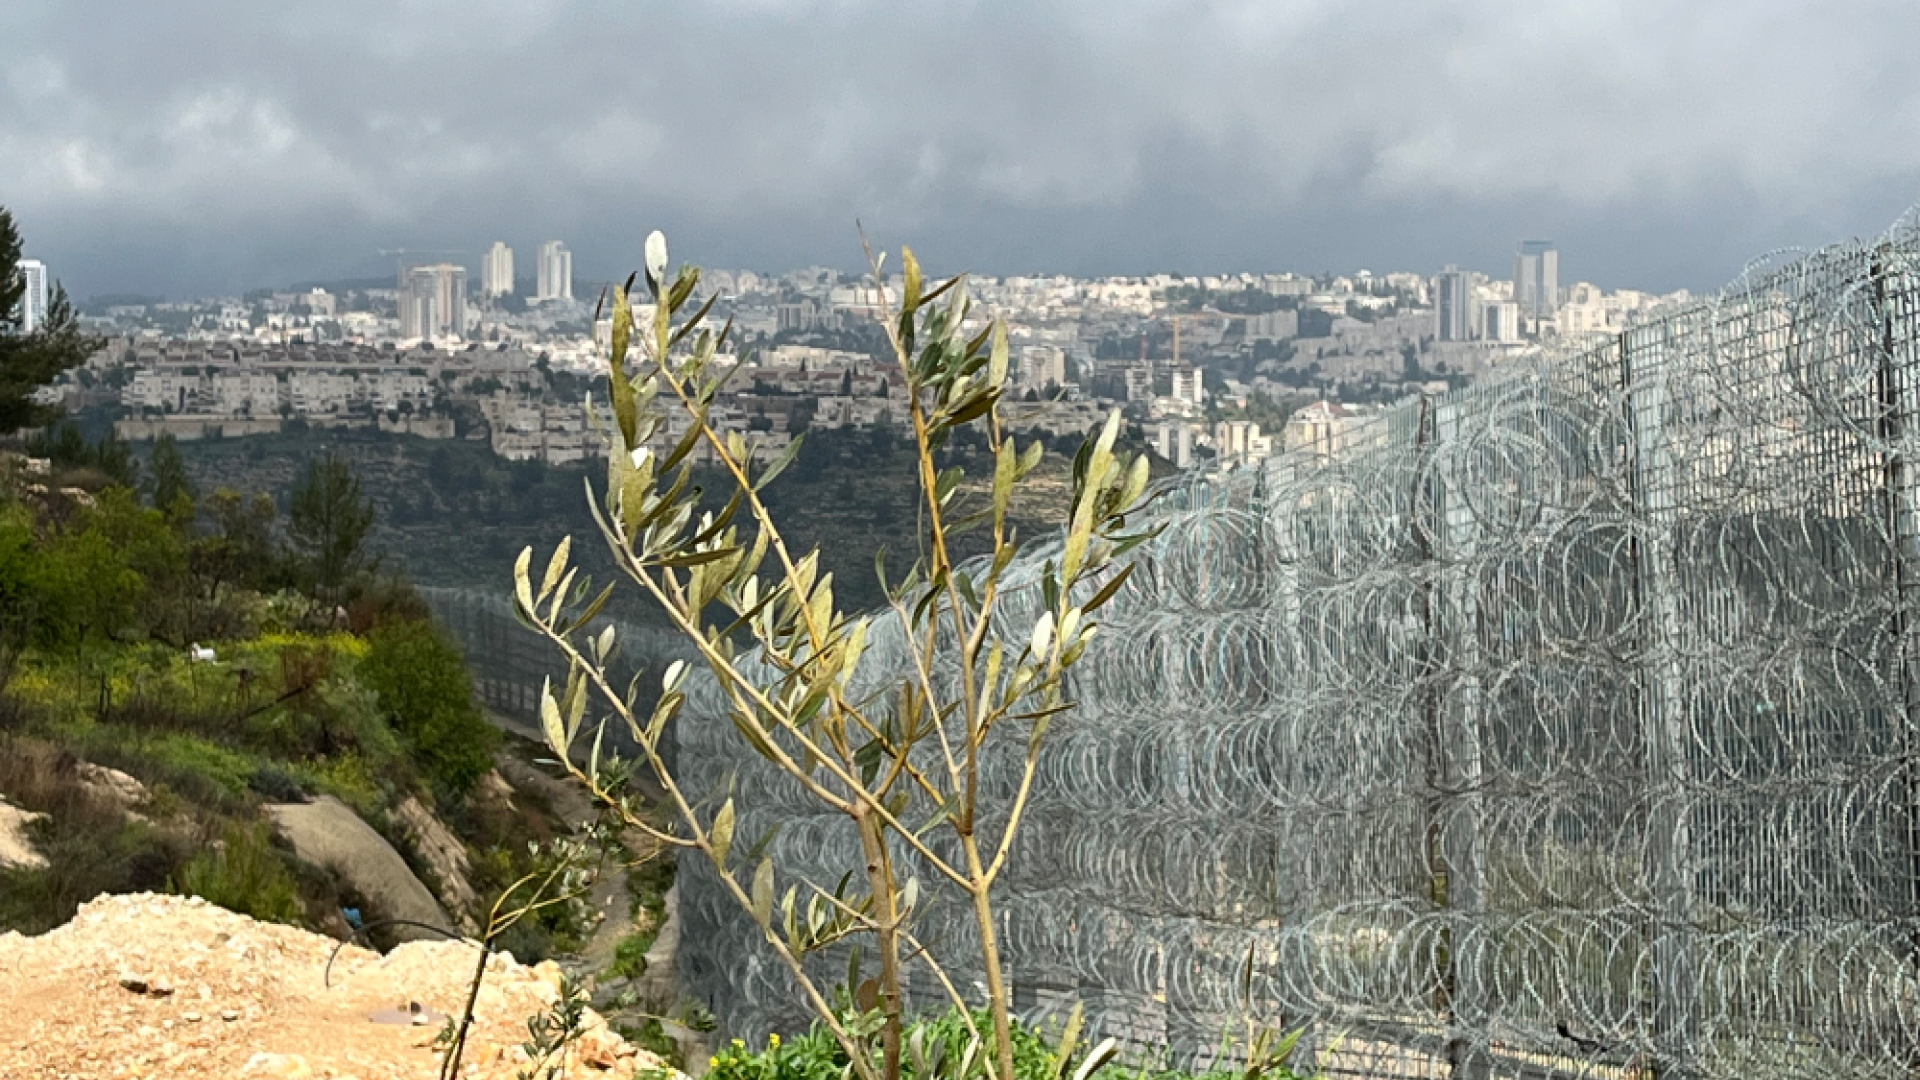 Olivenbaum am Grenzzaun Israel Gazastreifen